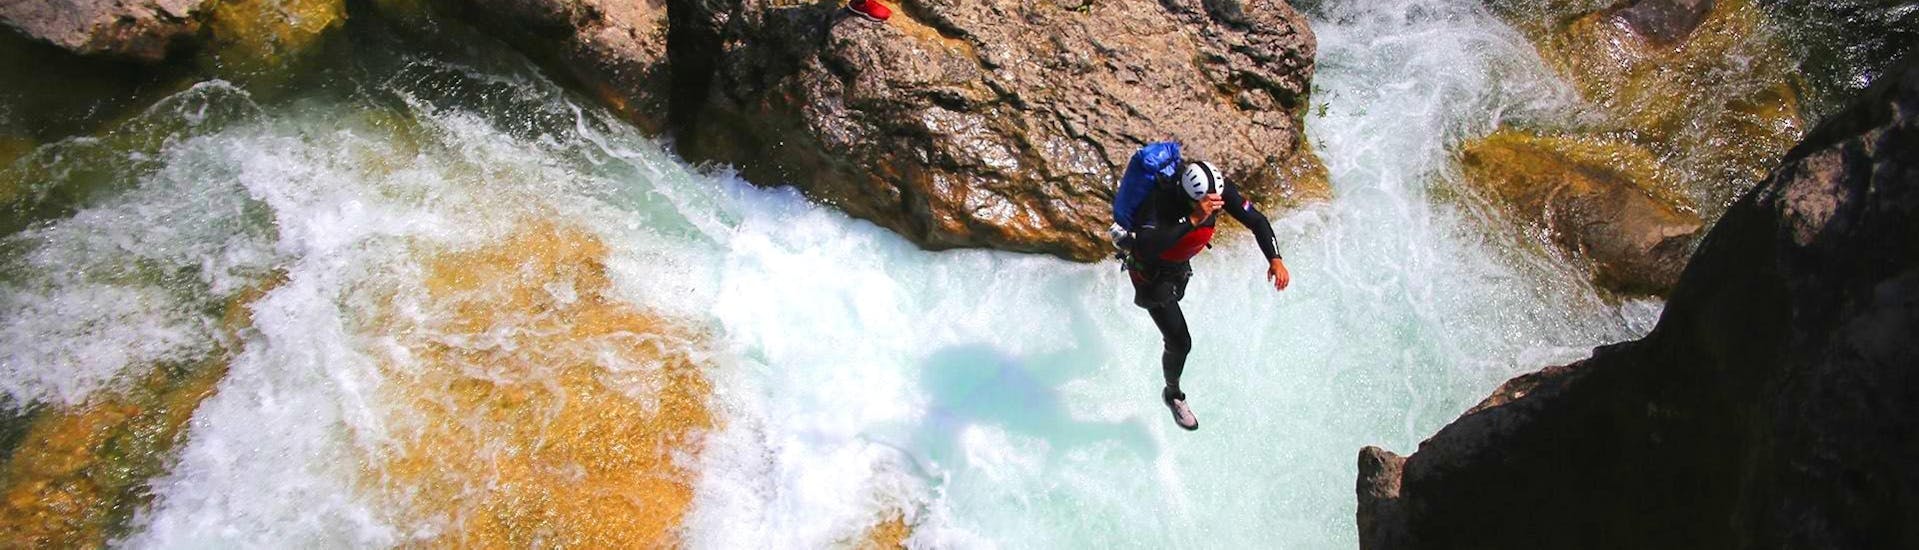 Een canyoning gids van Adventure Dalmatia springt in het water tijdens de Canyoning voor Beginners met Stadstransfer vanuit Split bij de Cetina rivier.